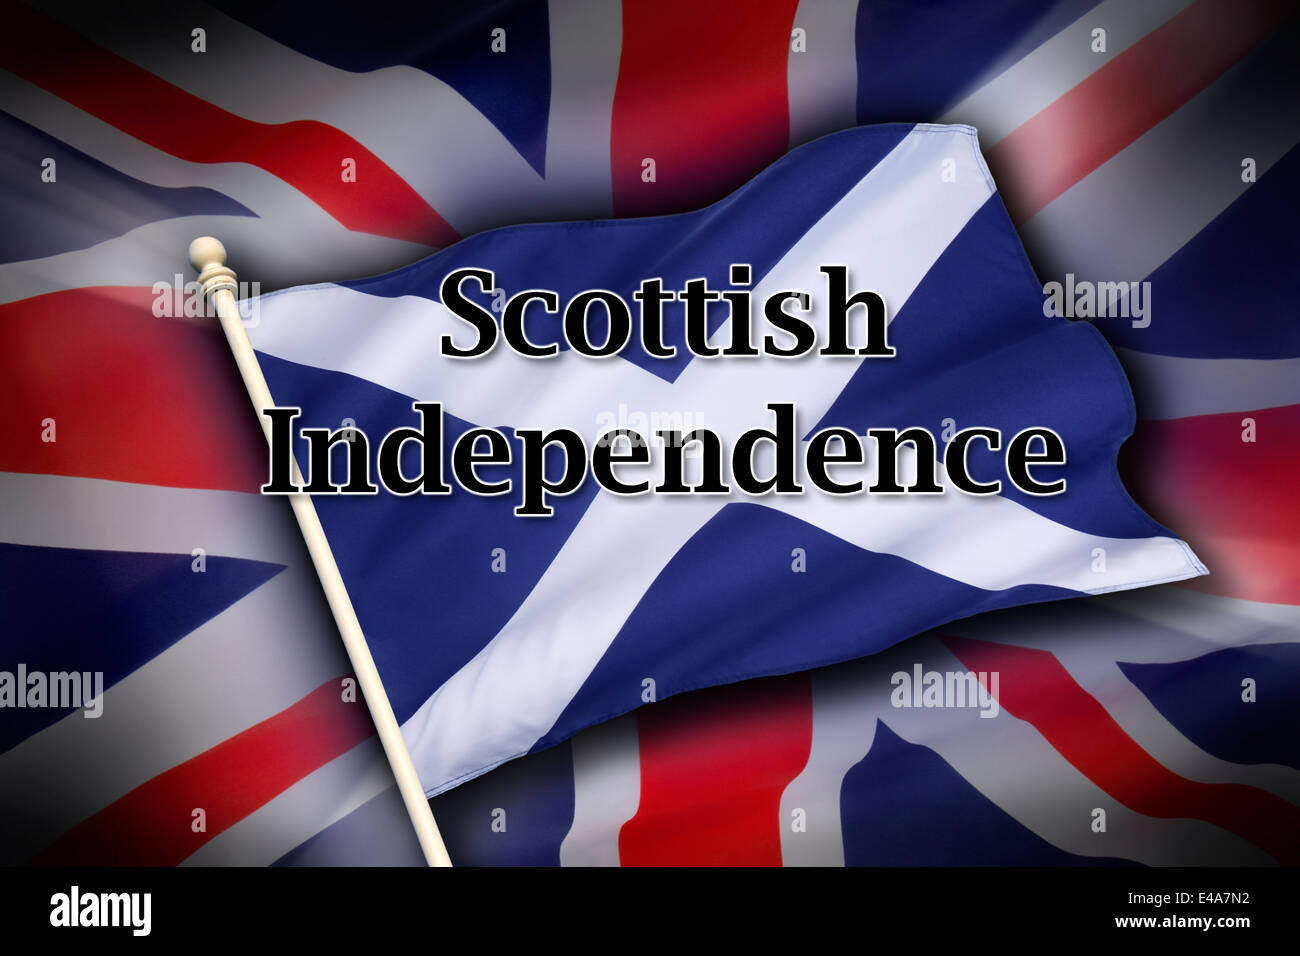 La bandera del Reino Unido (la bandera de la Unión) y la bandera de Escocia - Independencia Escocesa Foto de stock